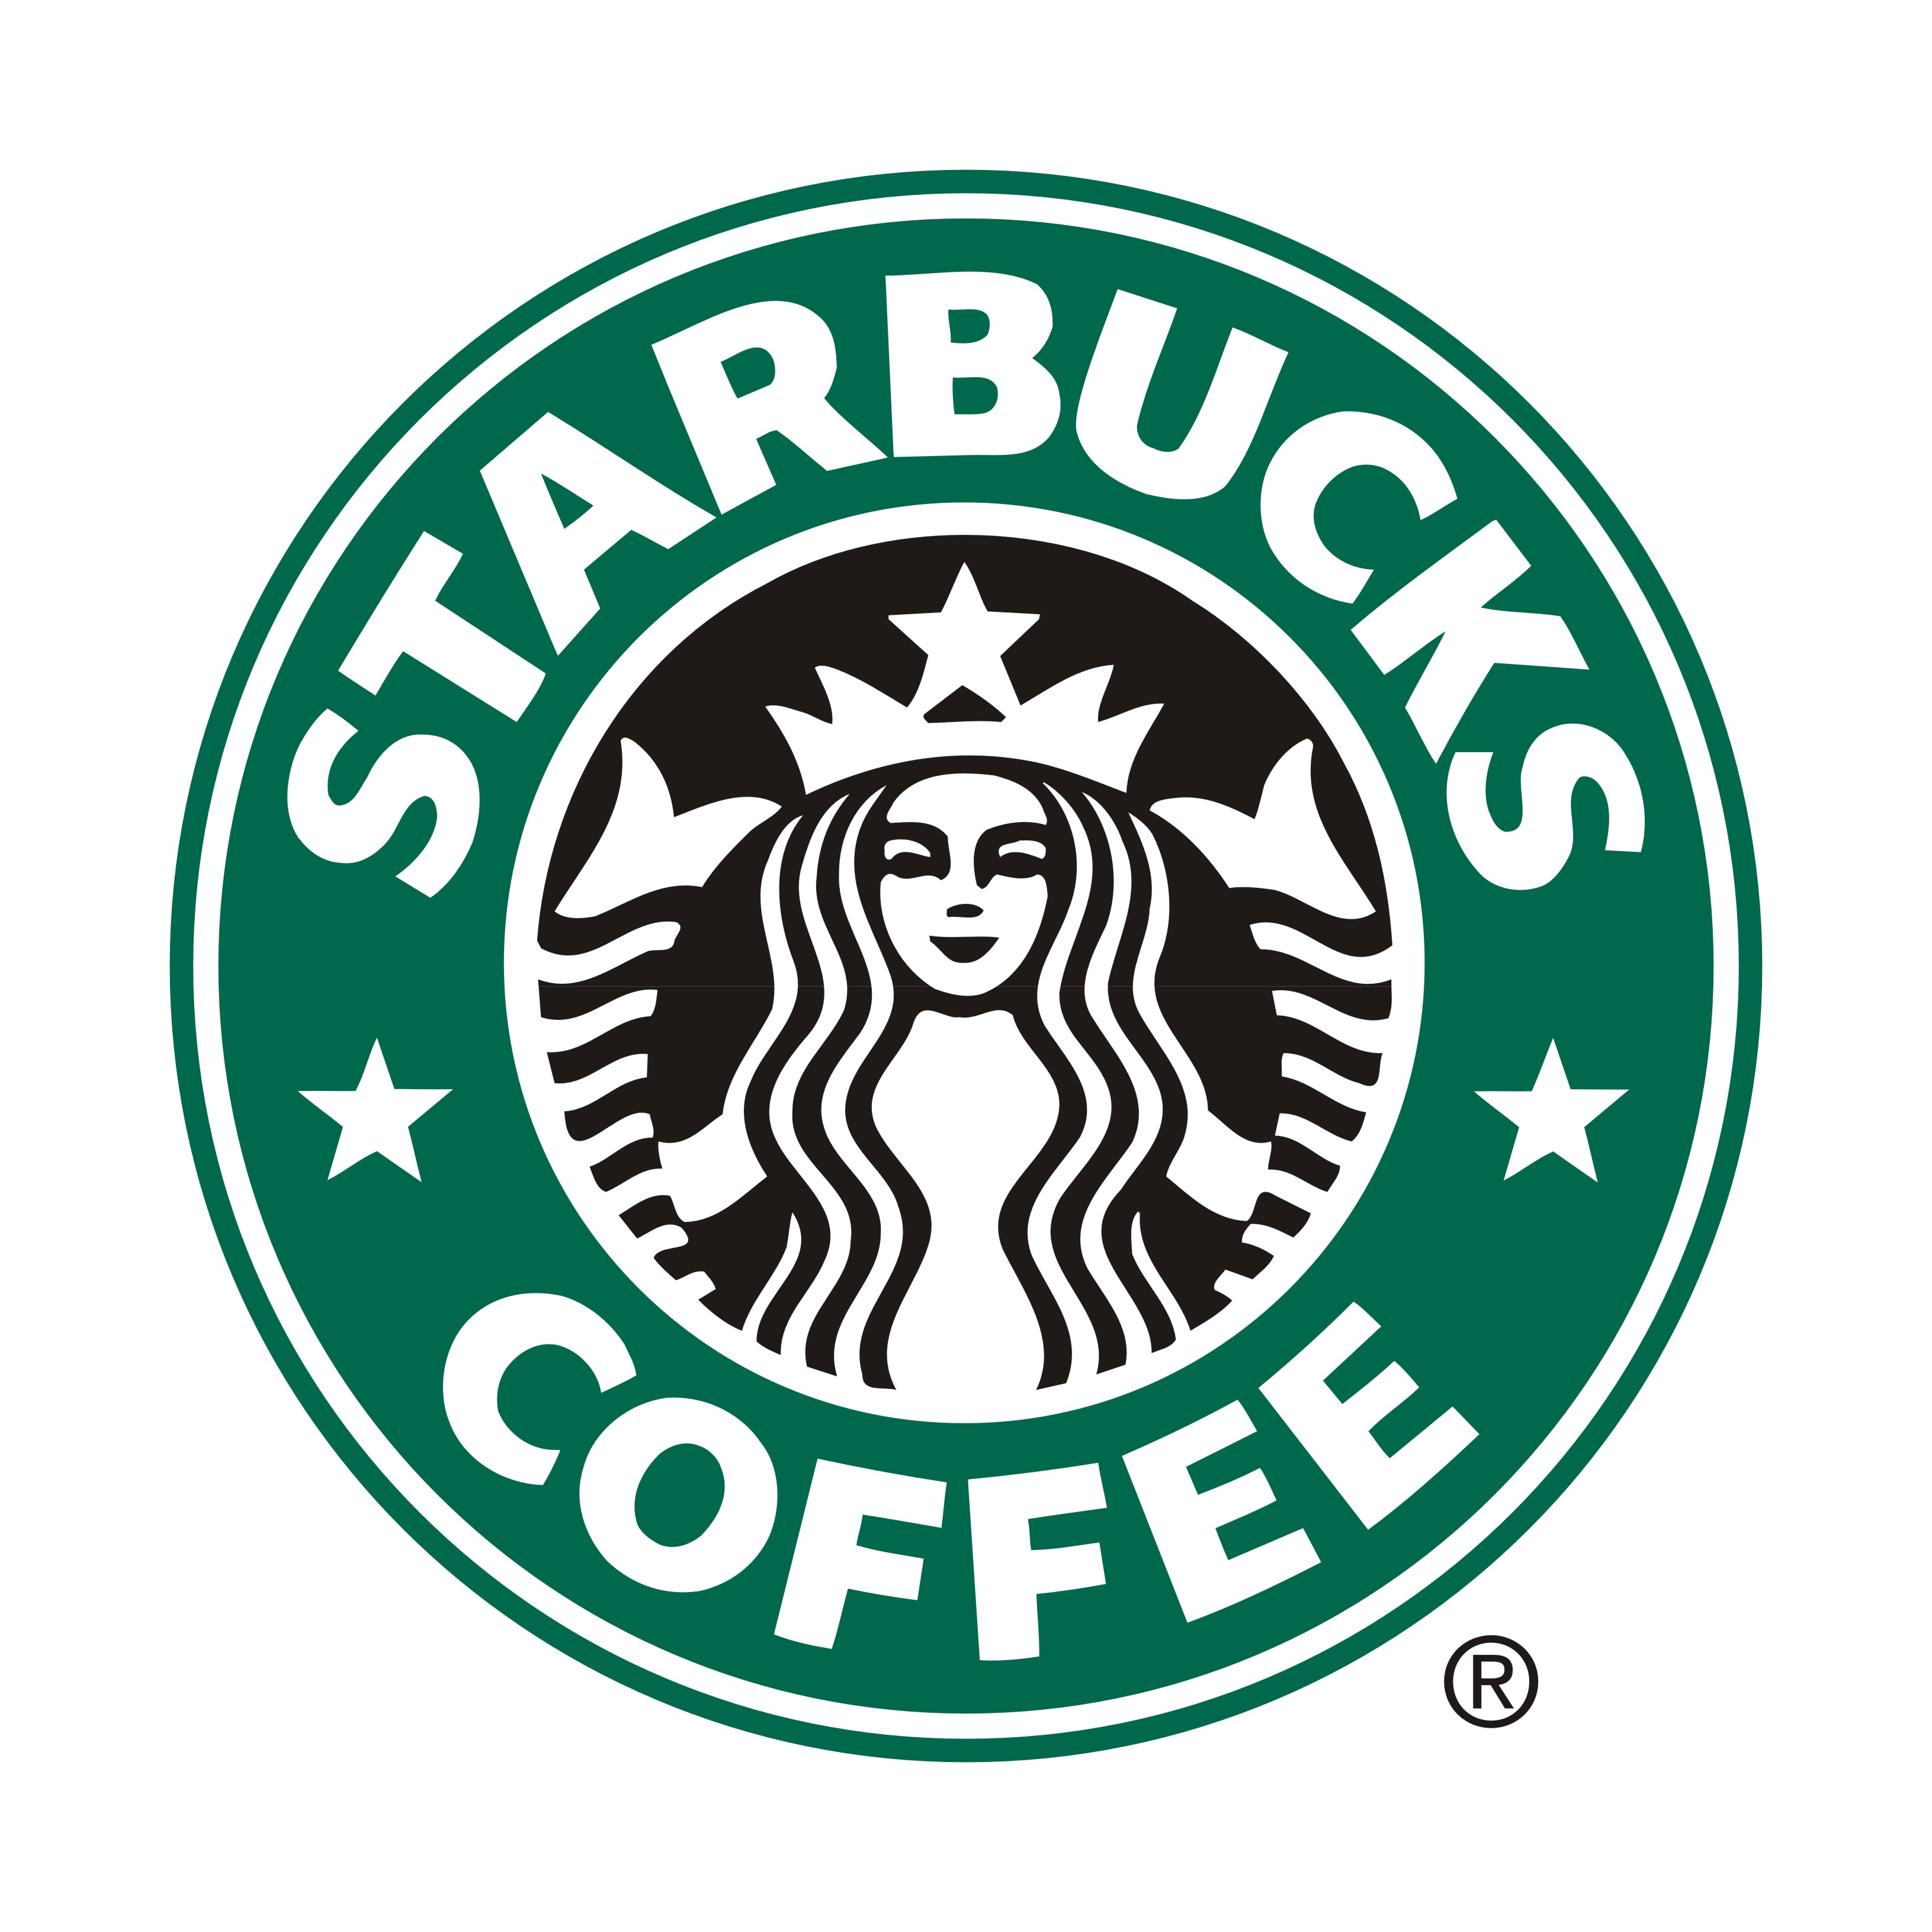 向星巴克學習經驗 星巴克不止是提供咖啡 咖啡館該如何經營